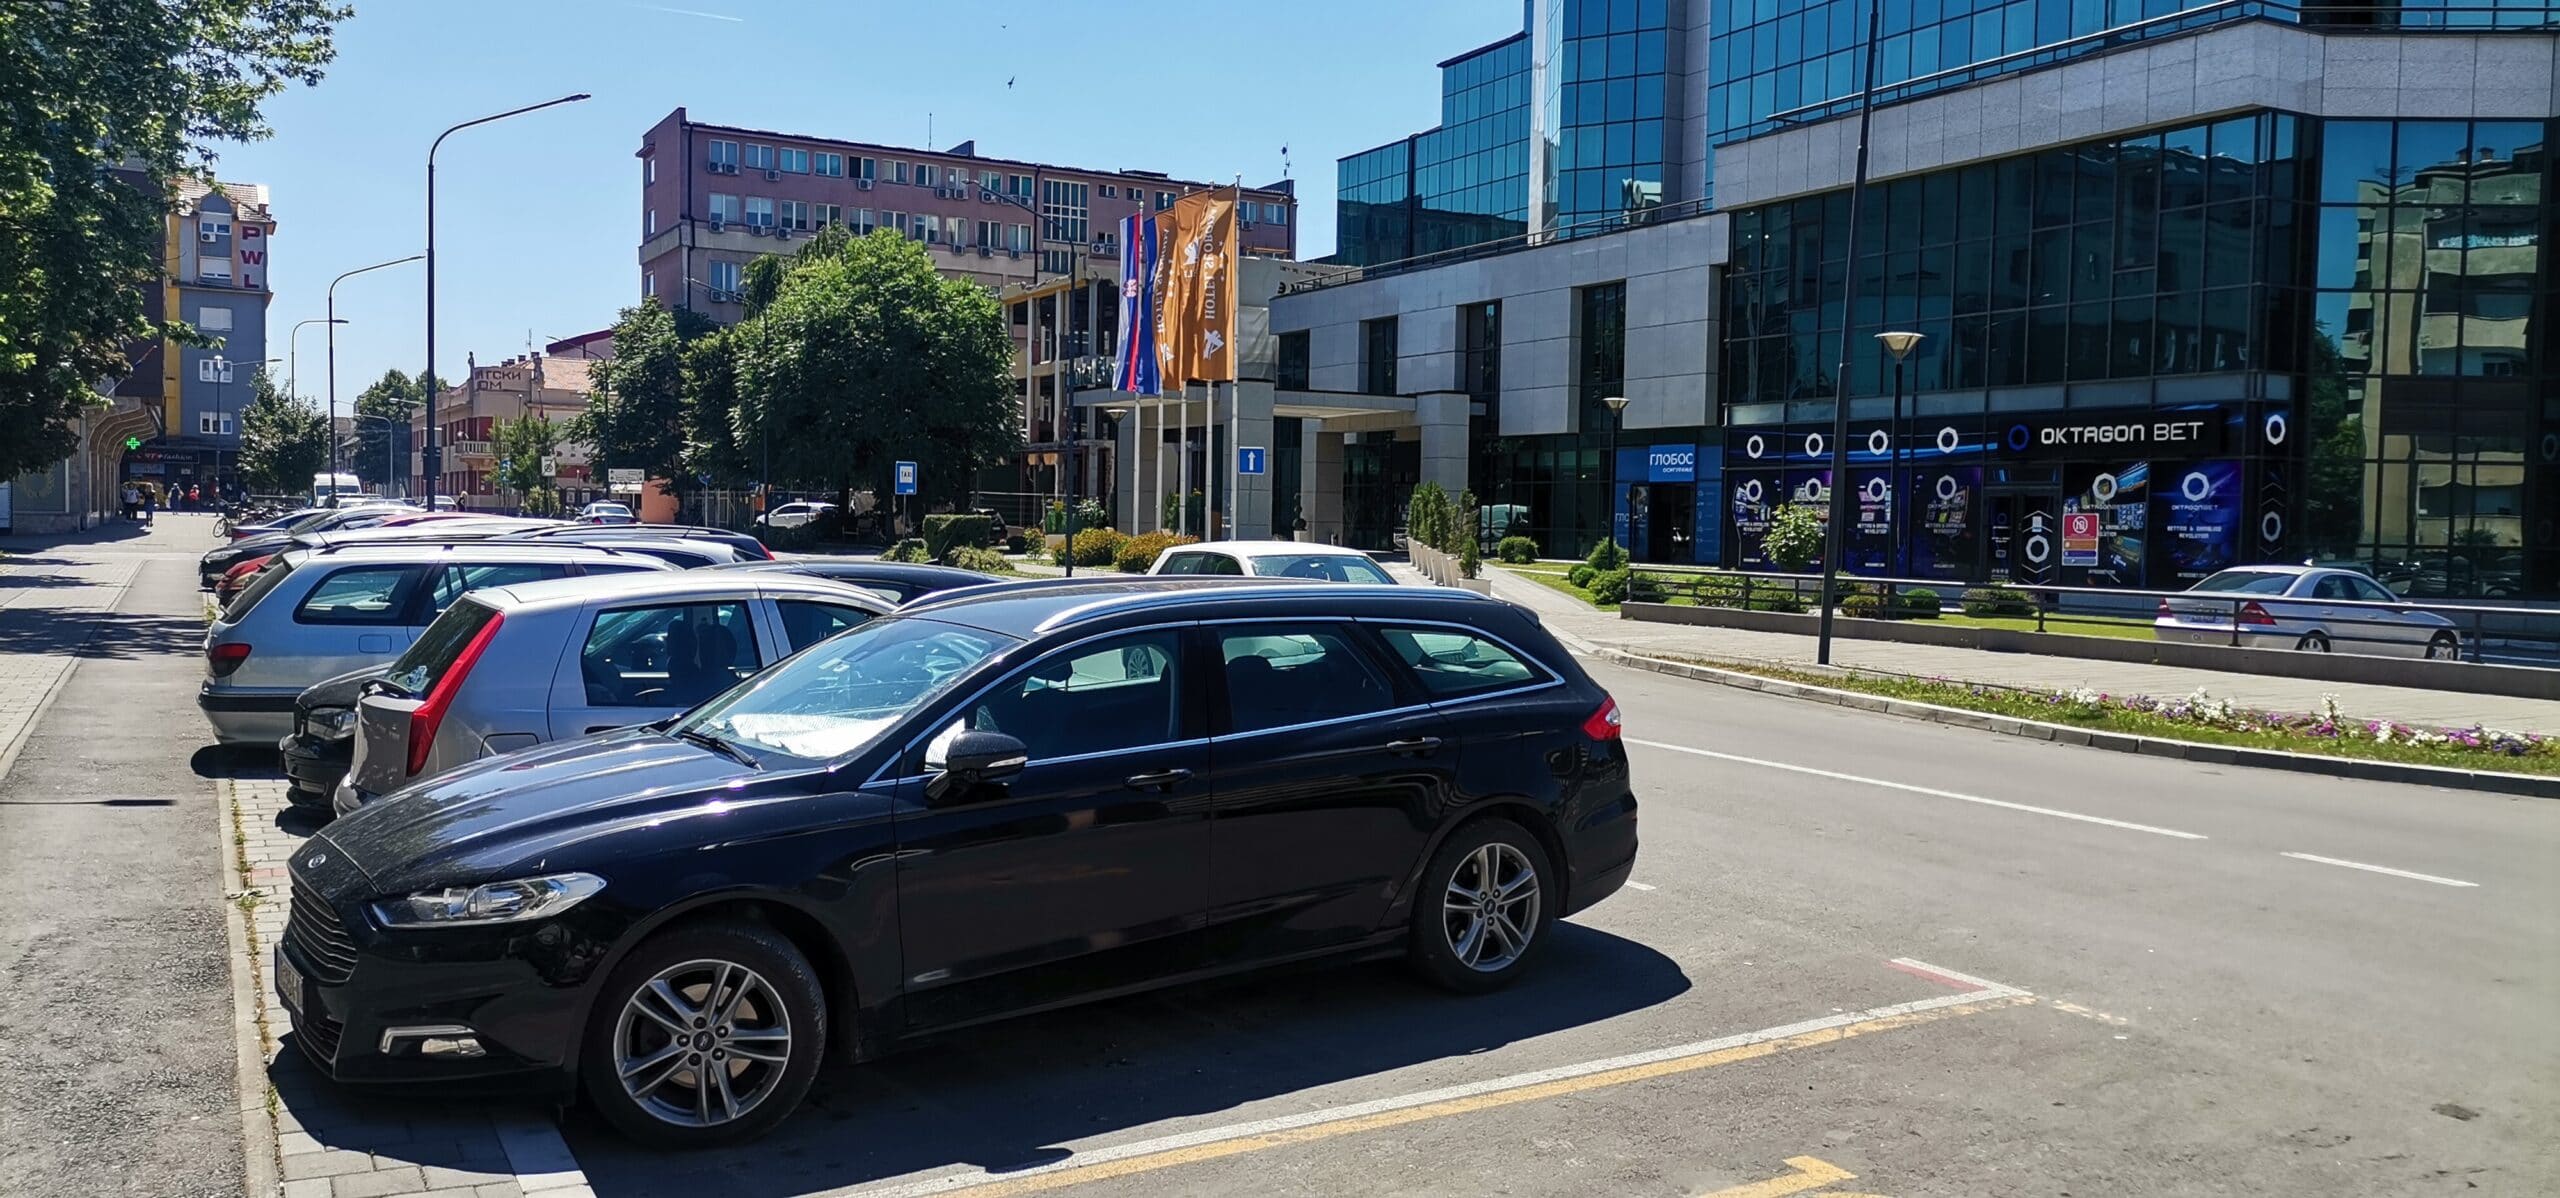 Auto koji je bio 2.000 sad je 3.000 evra: Kakve su cene polovnjaka u gradovima Srbije - šta se najmanje, a šta najviše prodaje? 2